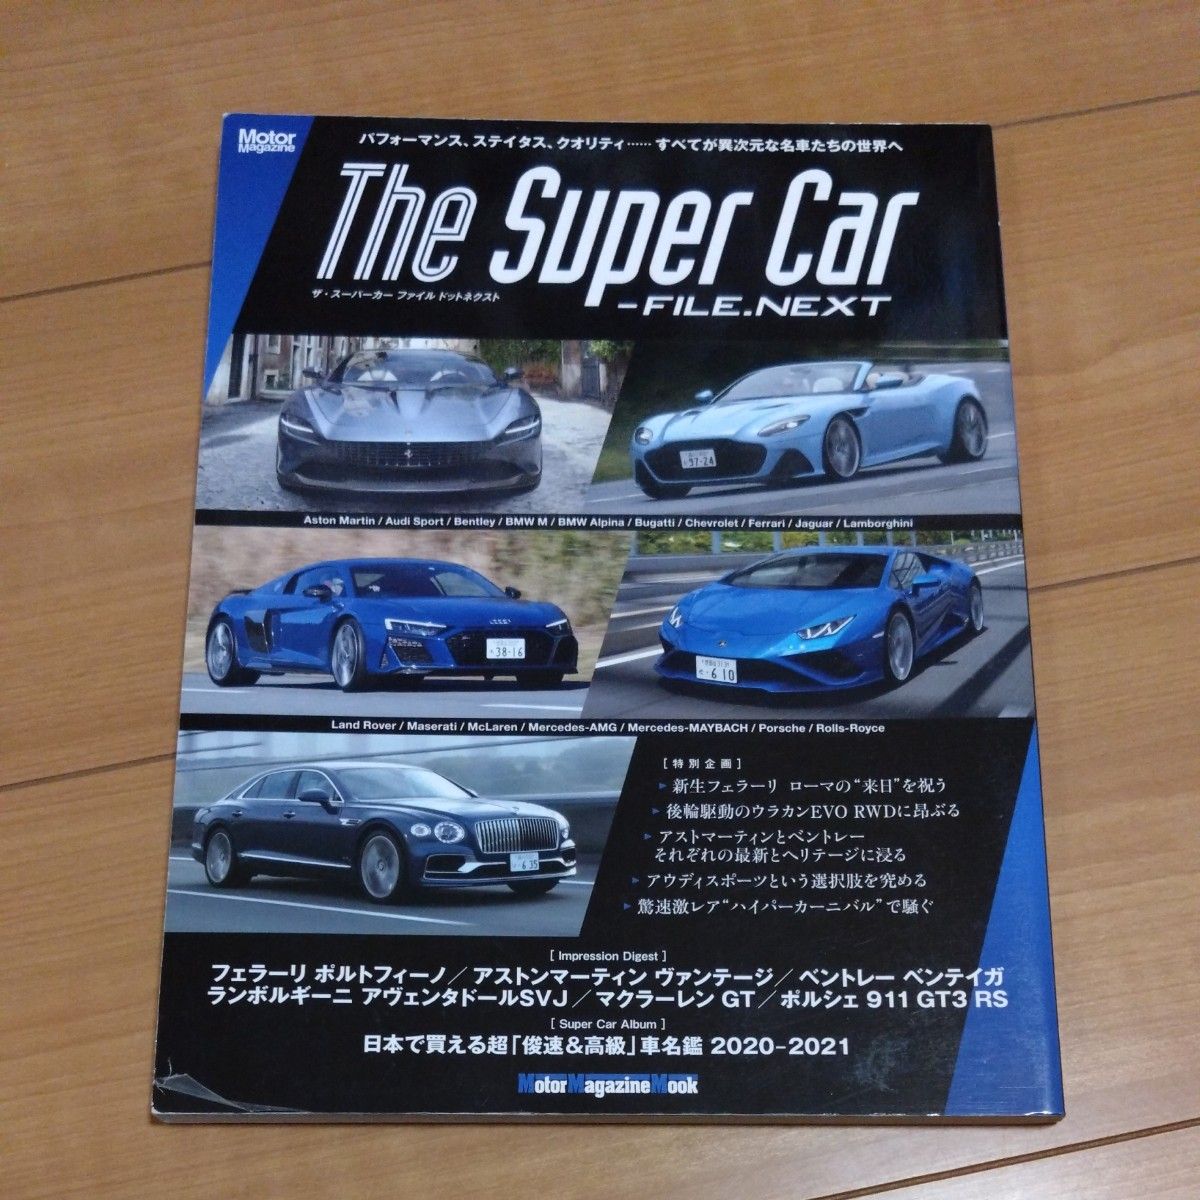 The Super Car‐FILE.NEXT 最新スーパーカーアルバム/市販モデル主要スペック比較ファイル